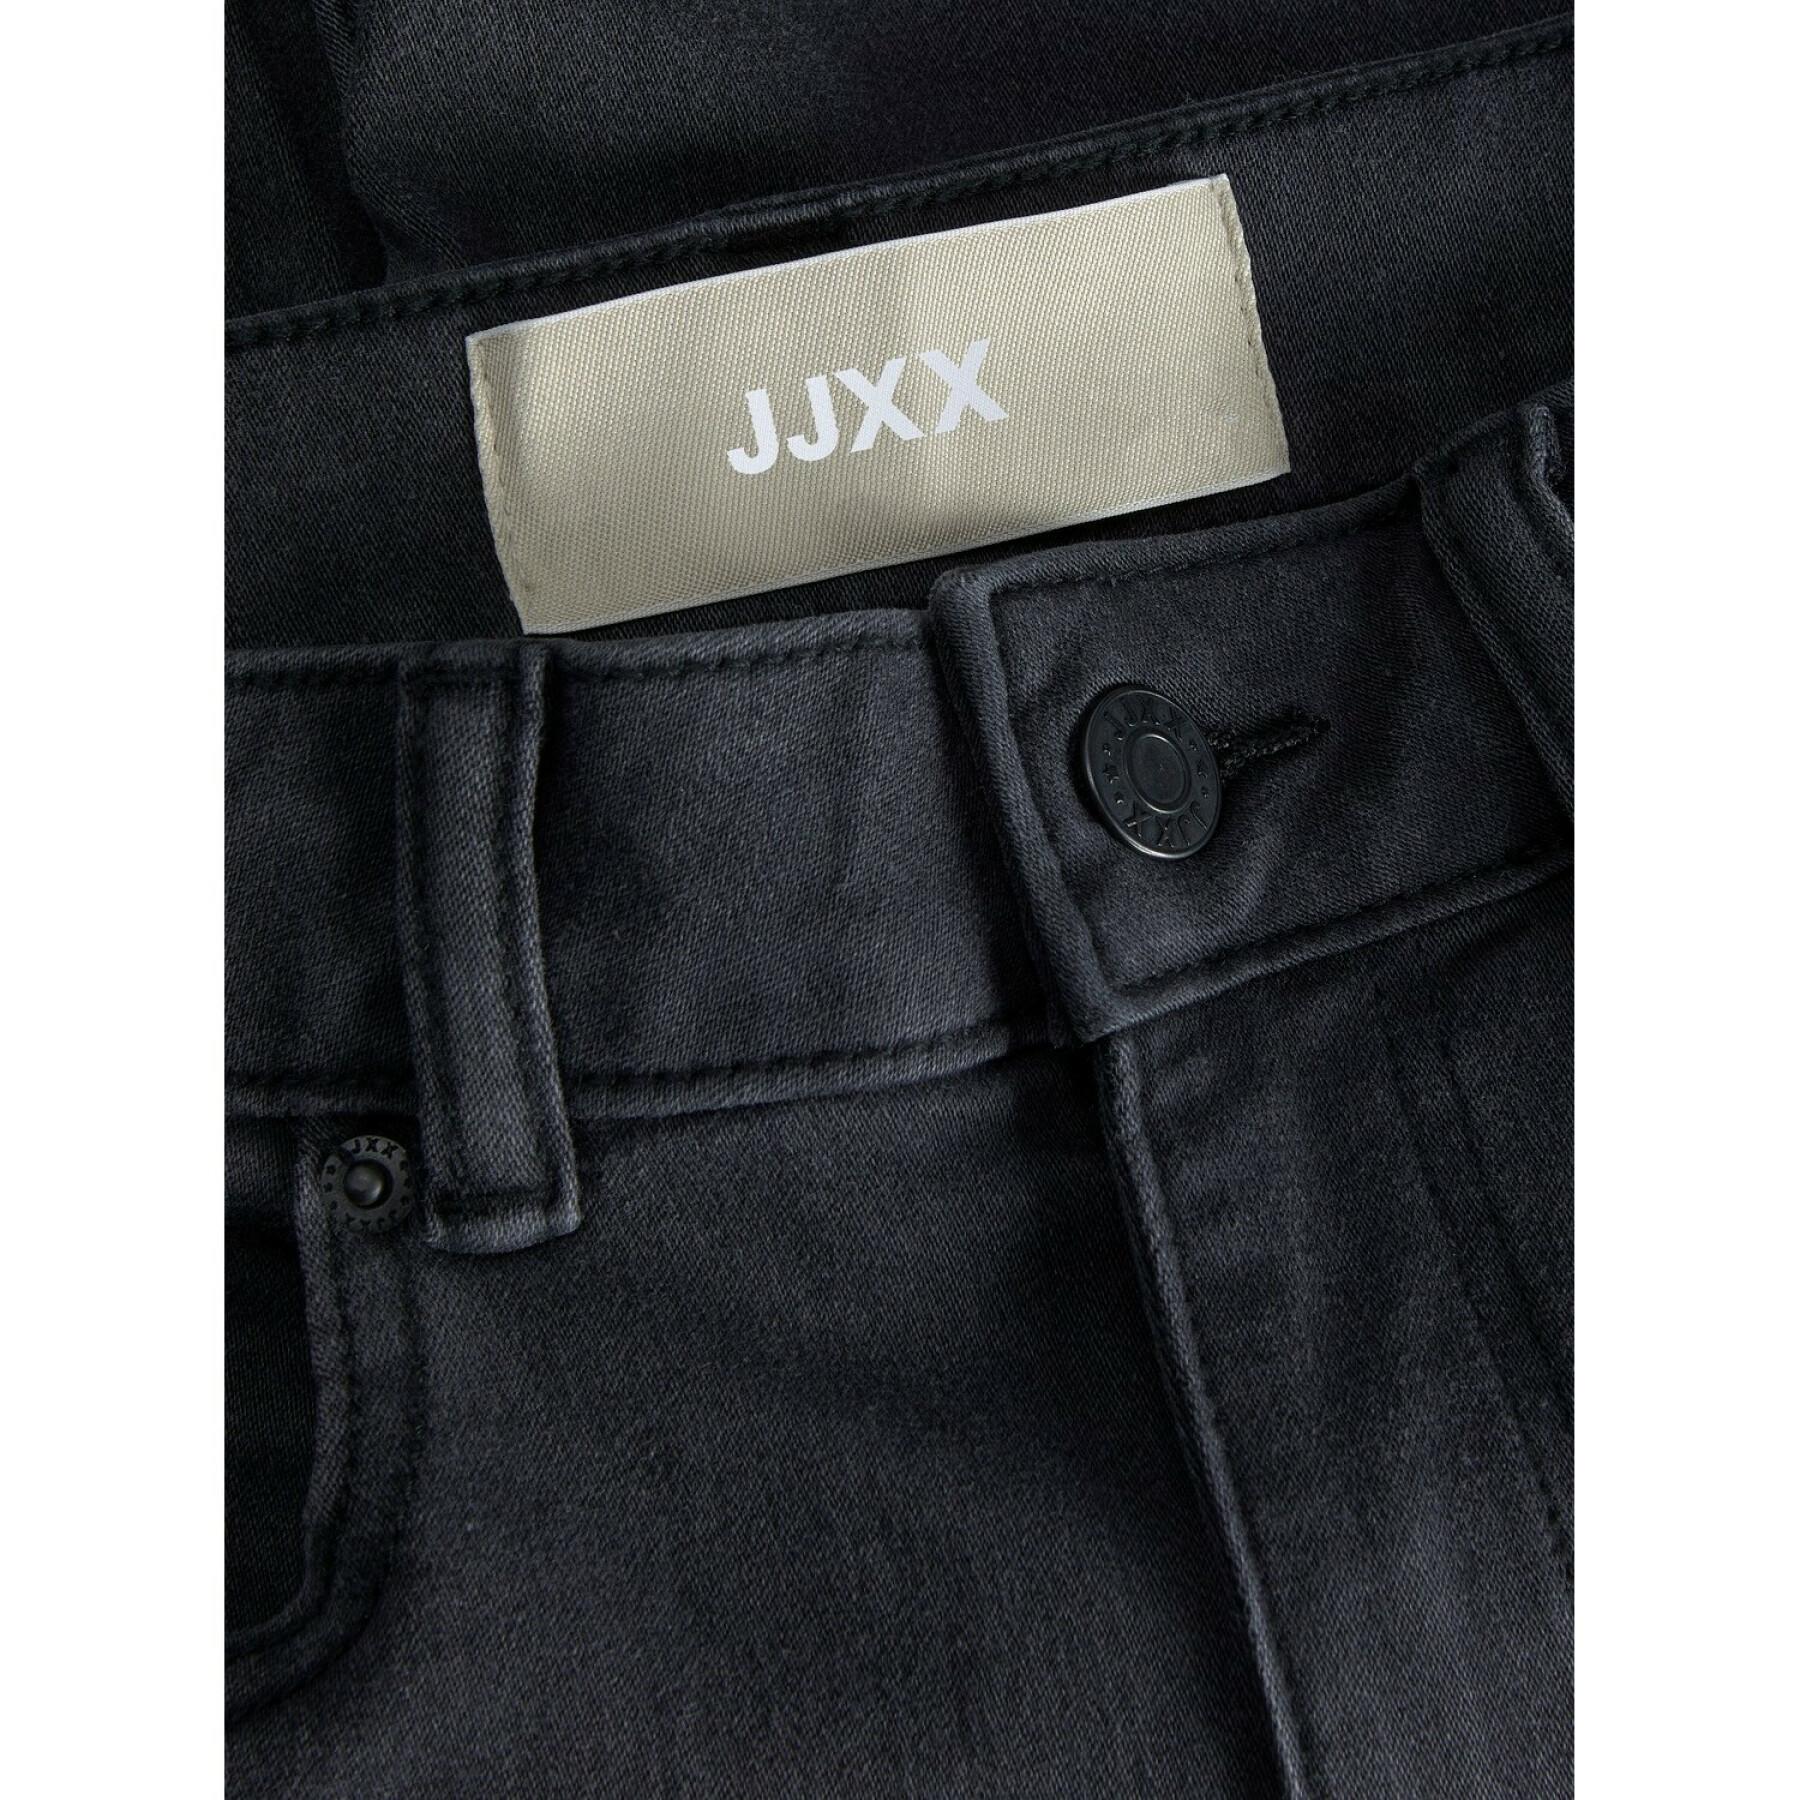 Jeans JJXX vienna skinny ns1006